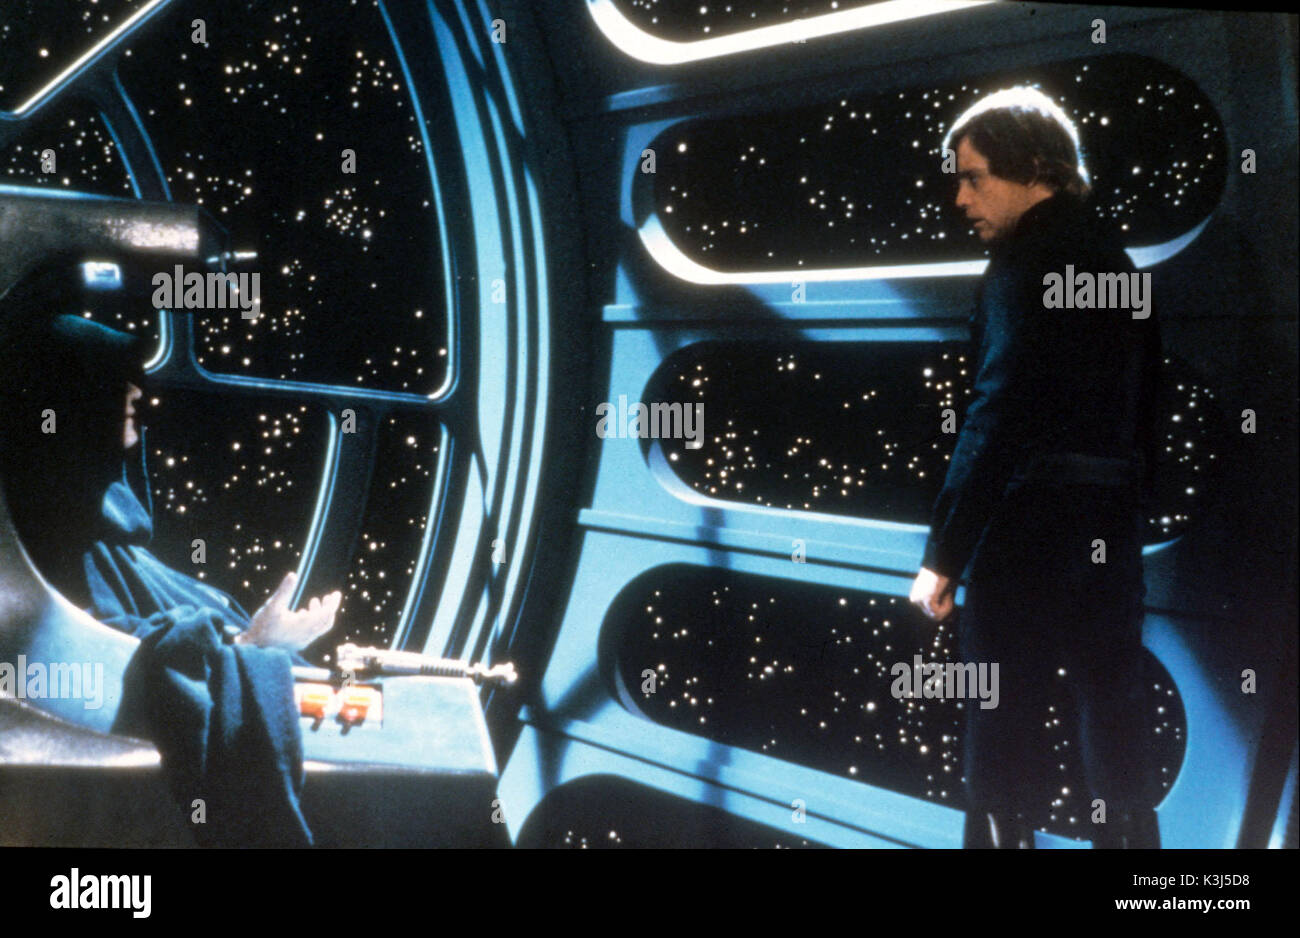 STAR WARS: EPISODE VI - RETURN OF THE JEDI IAN MCDIARMID as the Emperor, MARK HAMILL as Luke Skywalker     Date: 1983 Stock Photo